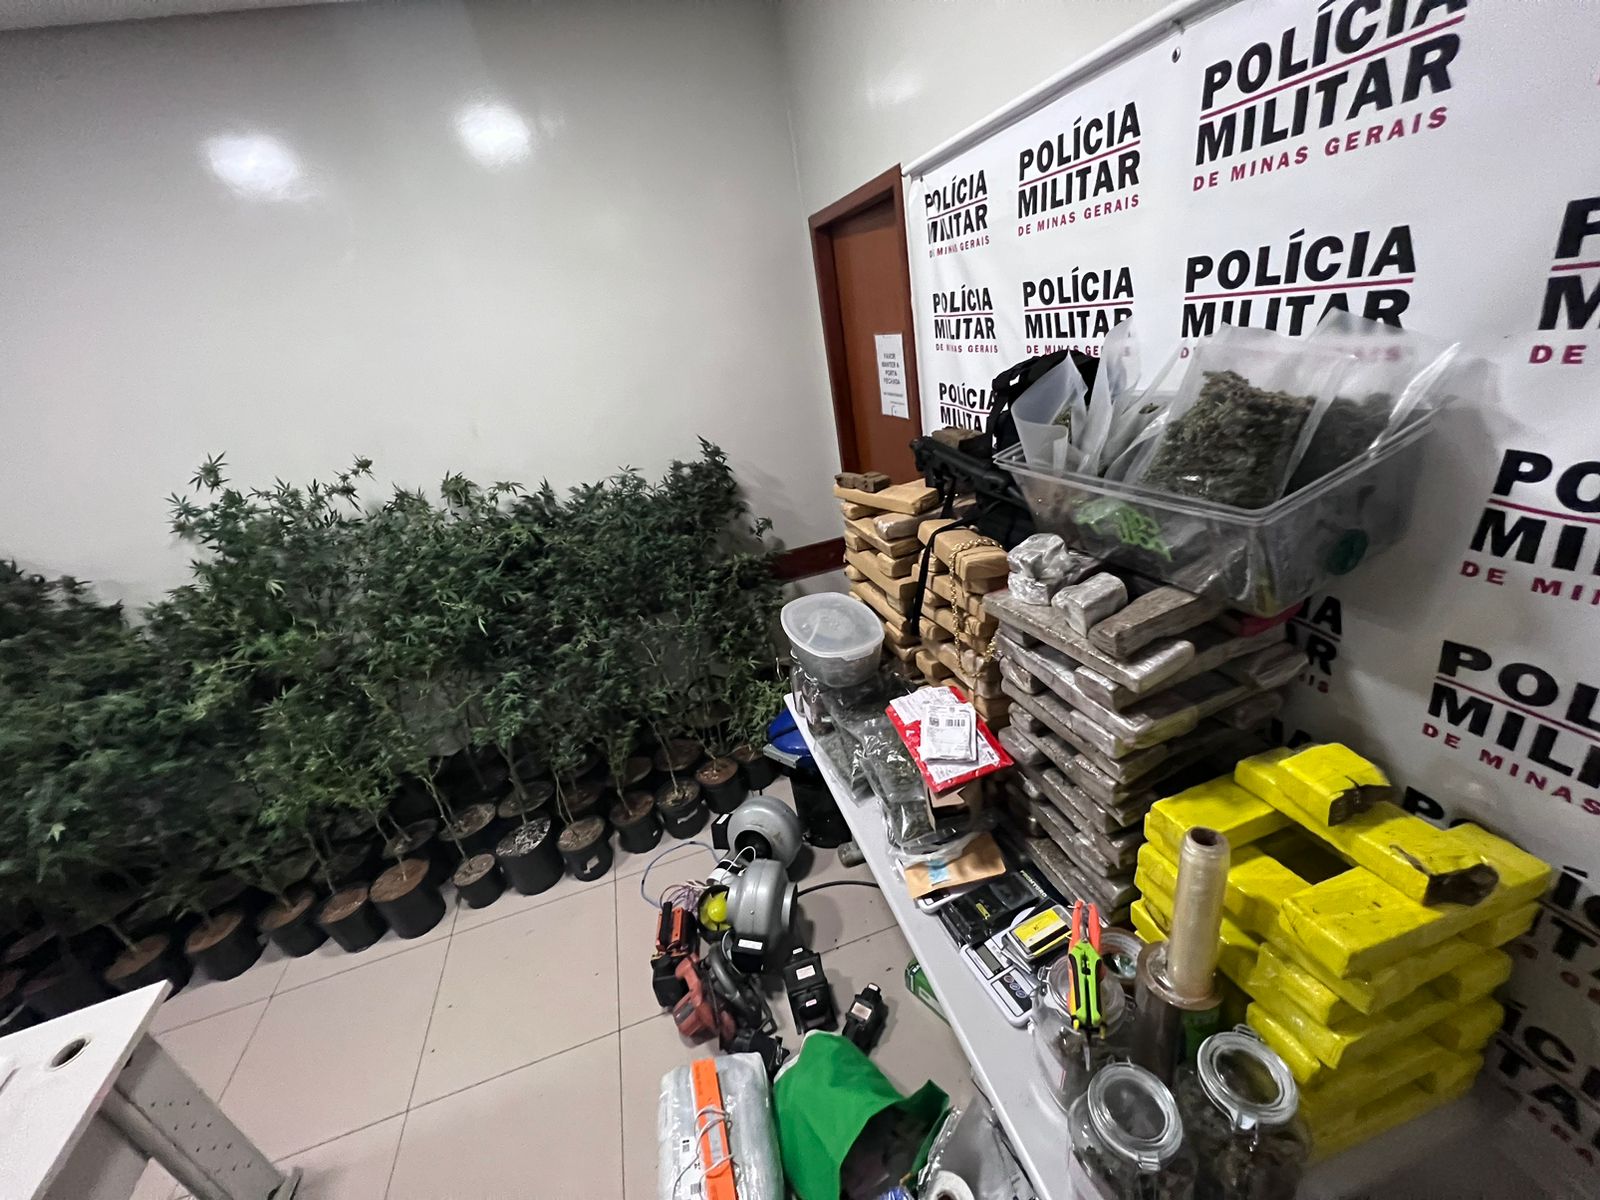 material apreendido pela polícia militar em Ipatinga